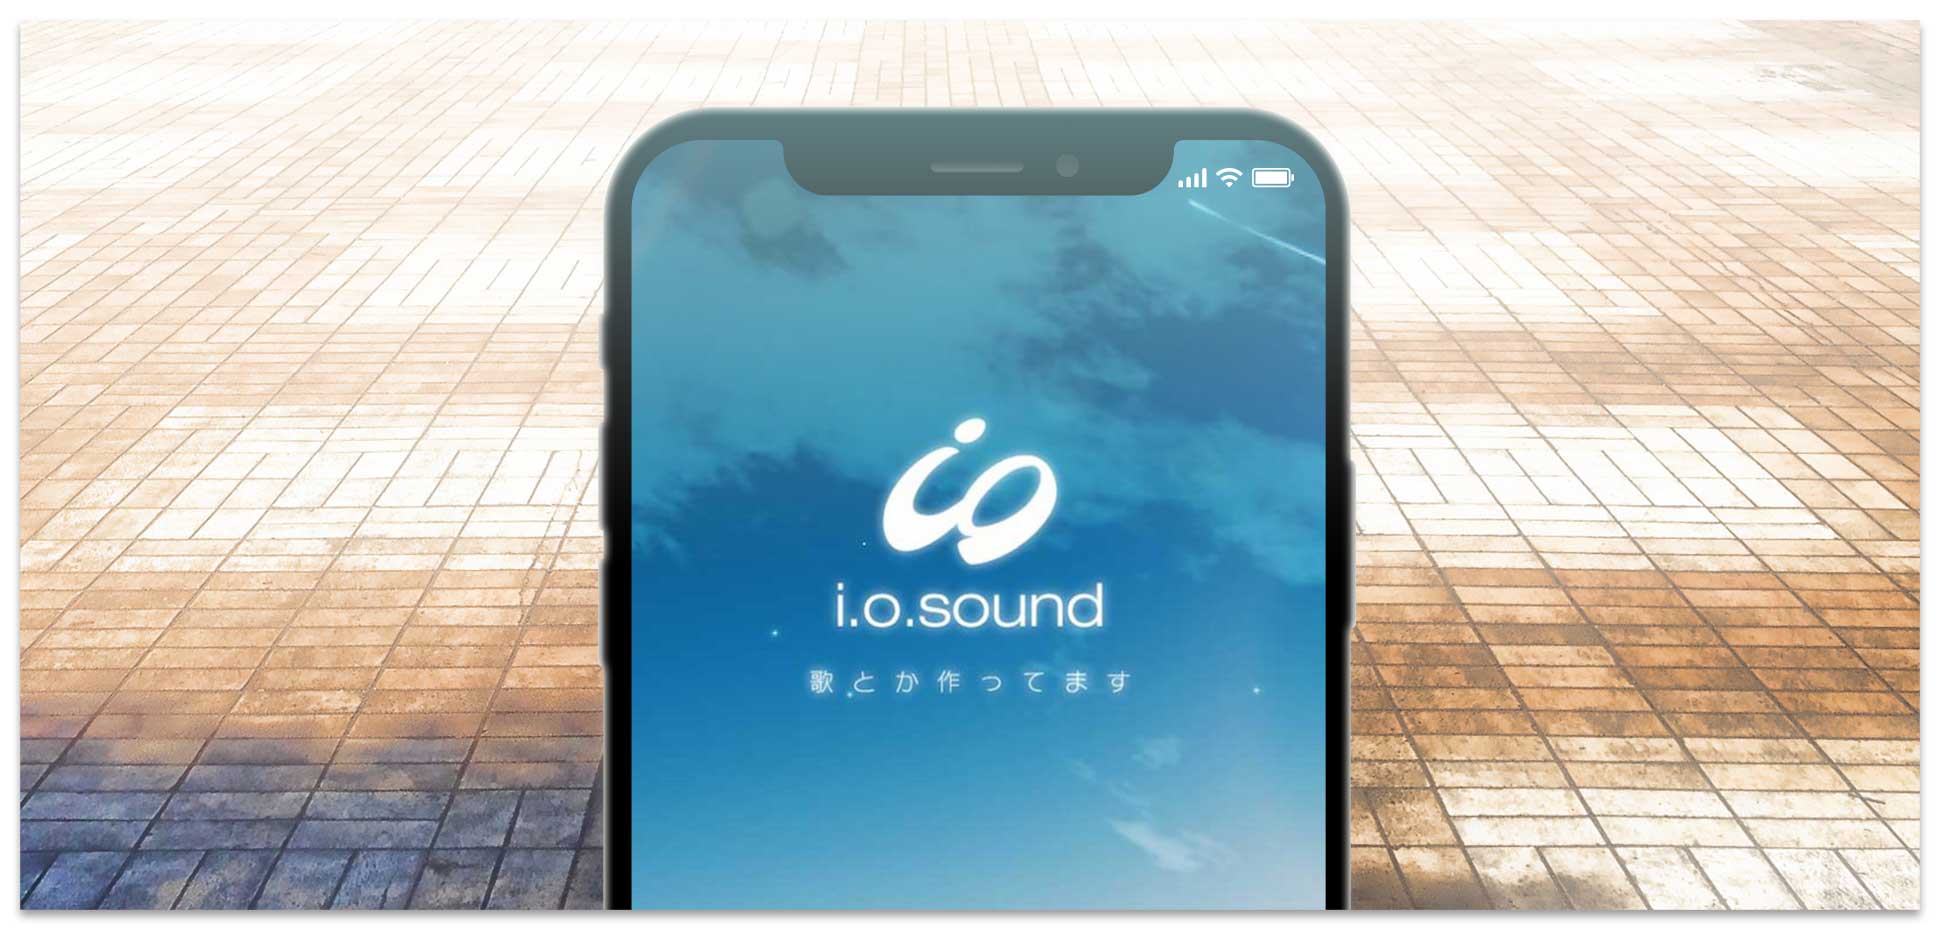 i.o.sound メインビジュアル